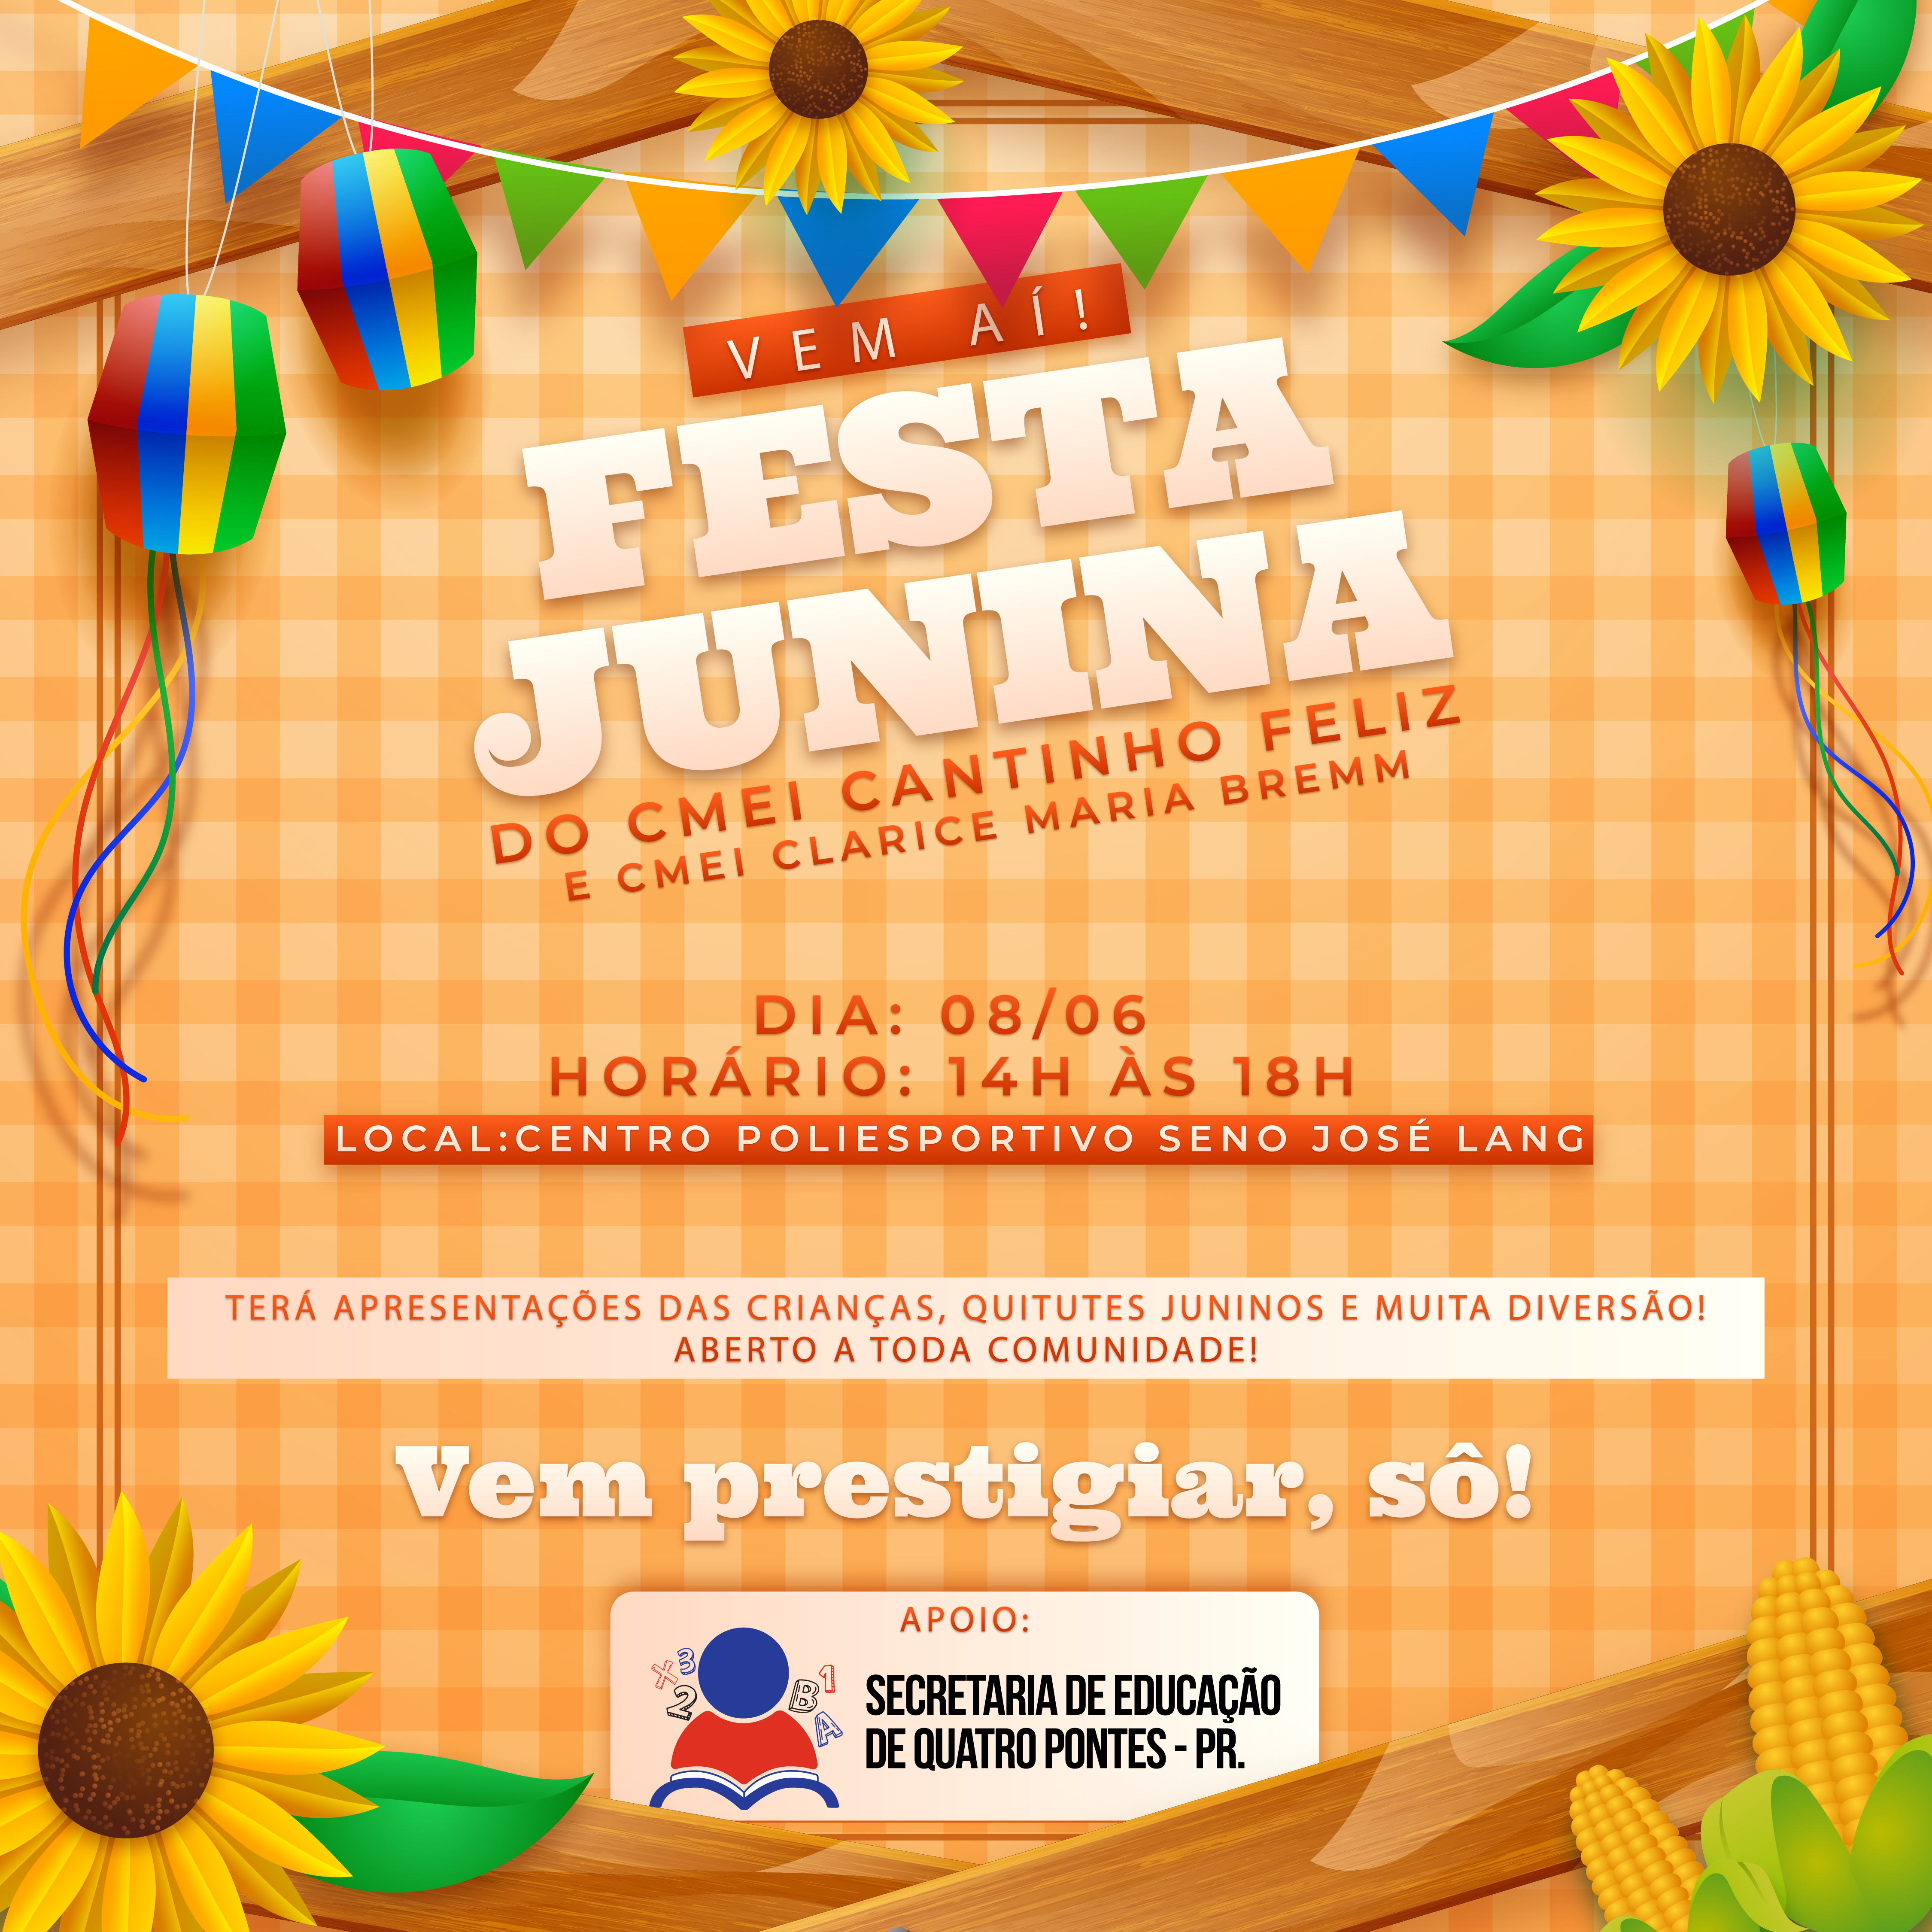 Festa Junina do CMEI Cantinho Feliz e CMEI Professora Clarice Maria Bremm será realizado dia 08 de junho